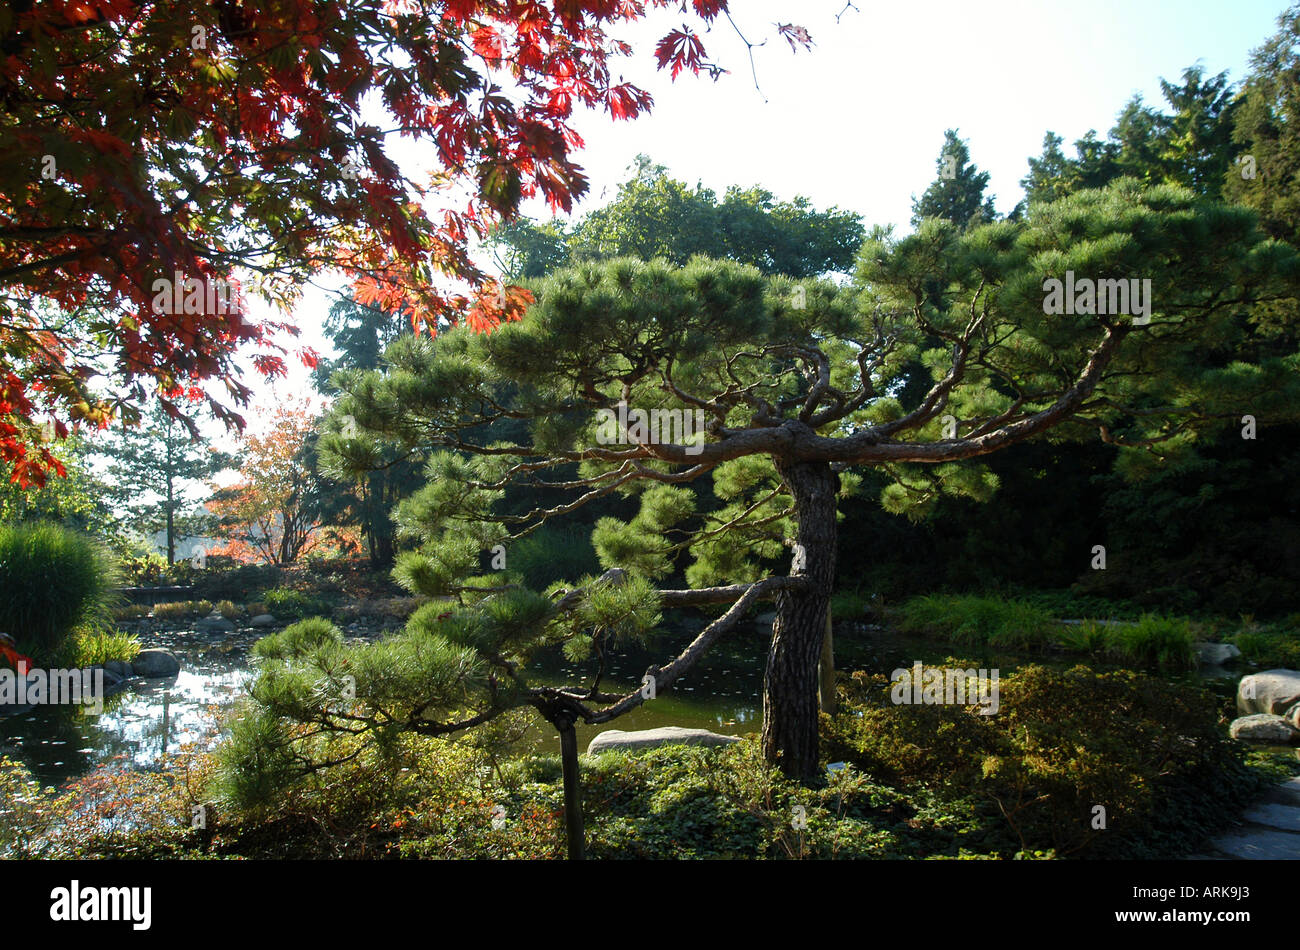 Der Japanische Garten Im Botanischen Garten Im Stadtteil Klein Flottbek Hamburg Deutschland Stockfotografie Alamy